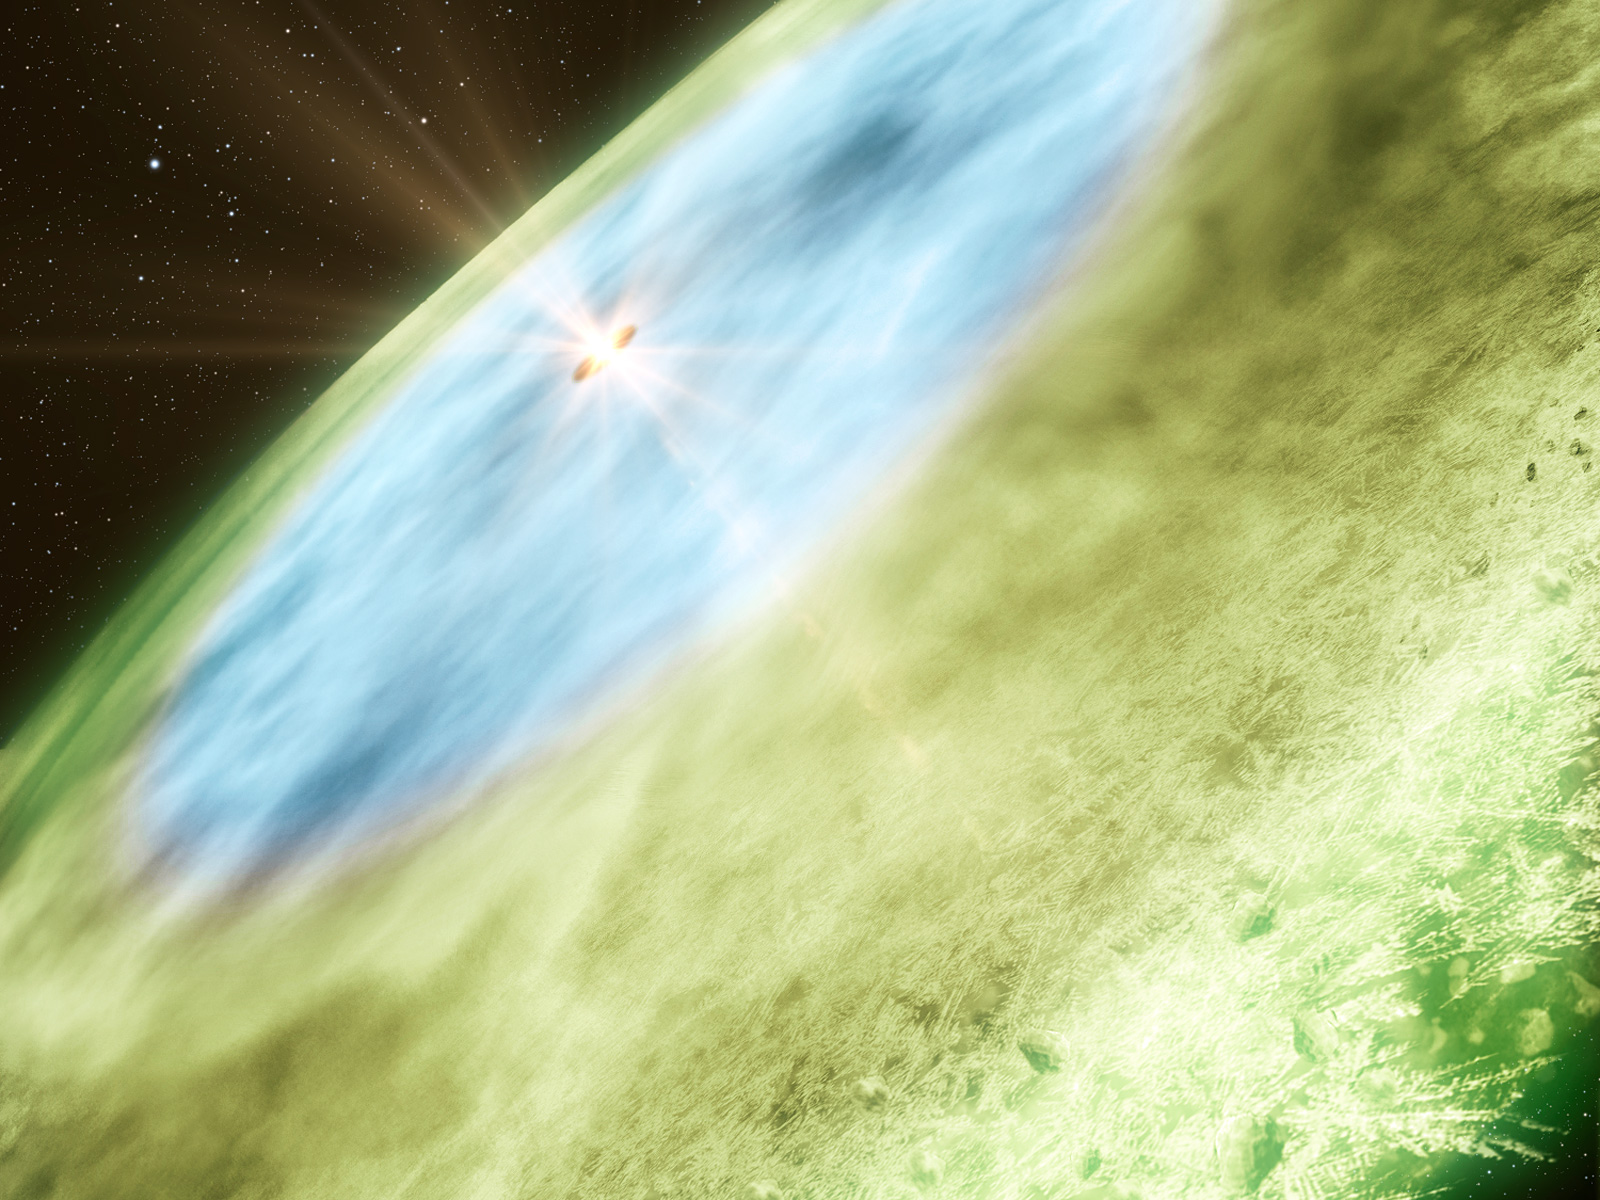 La jeune étoile TW Hydrae et son disque protoplanétaire